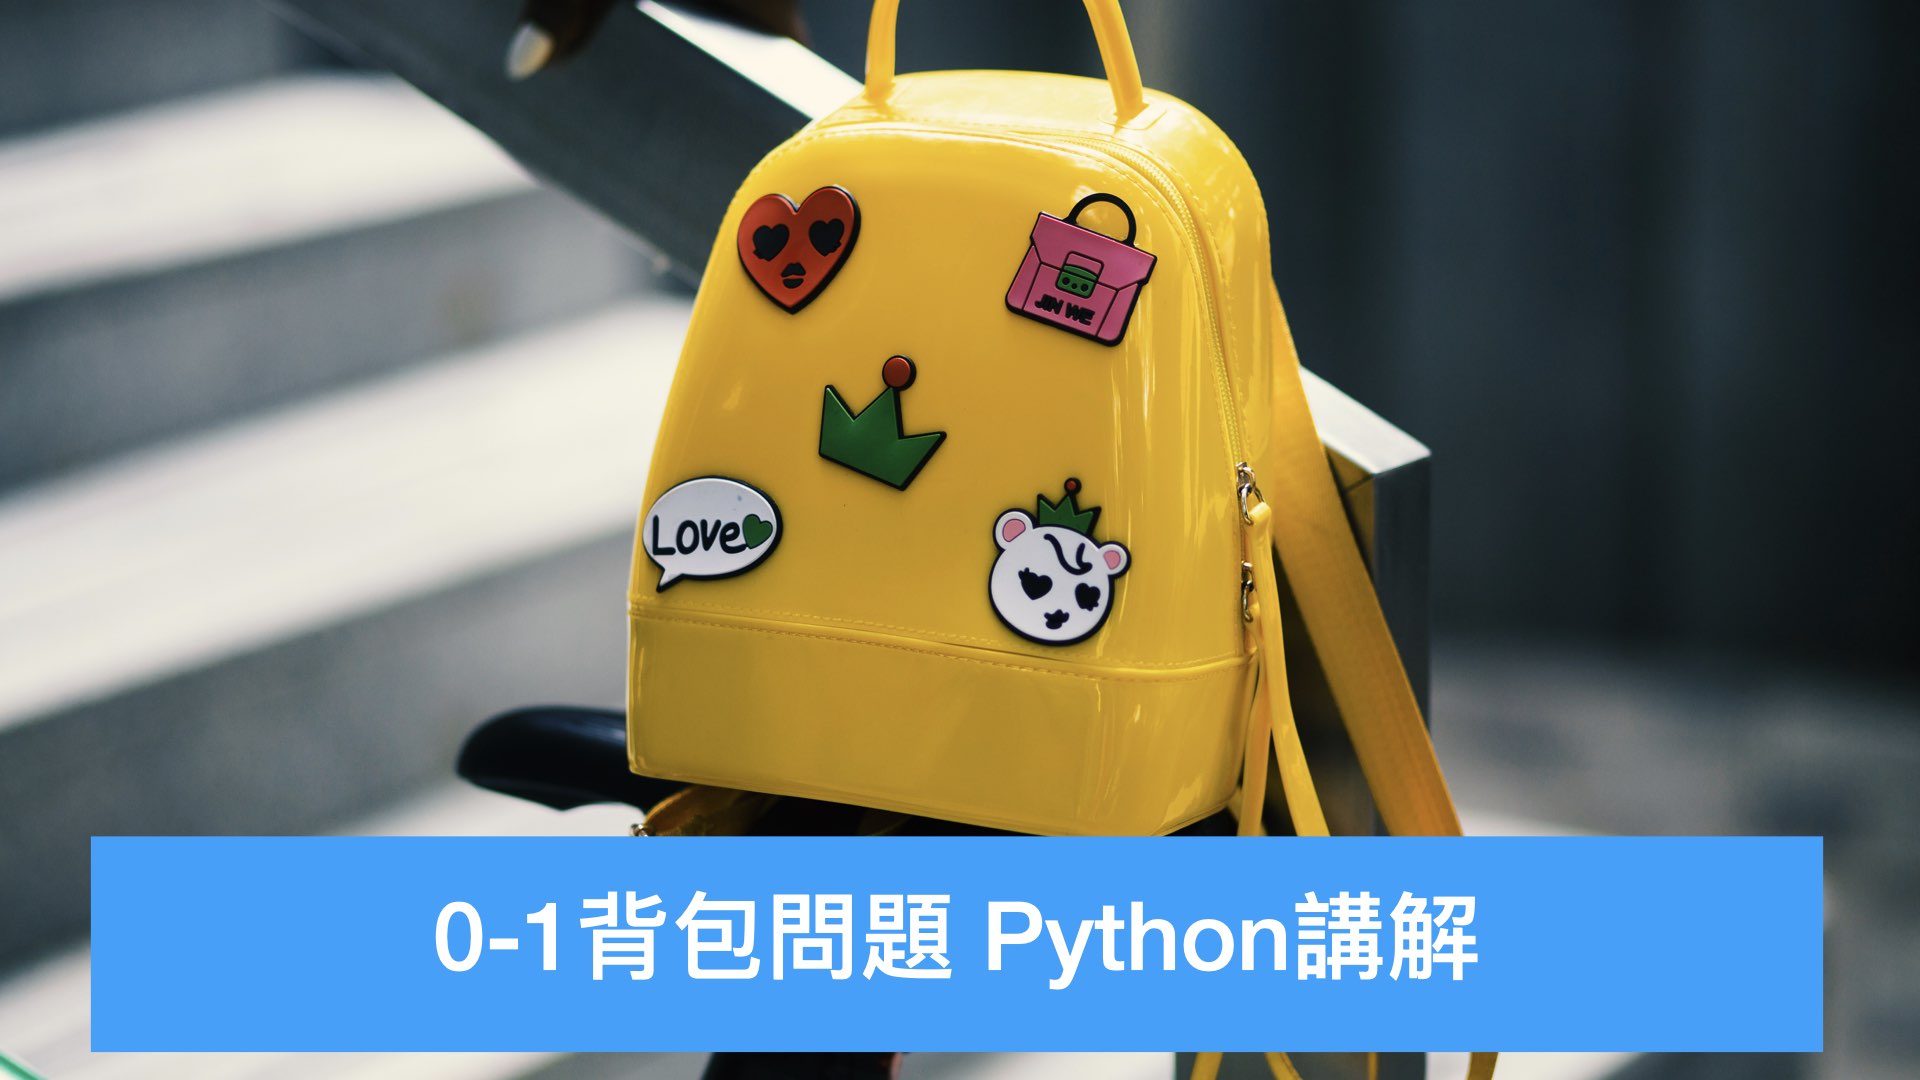 0-1 背包问题 Python讲解